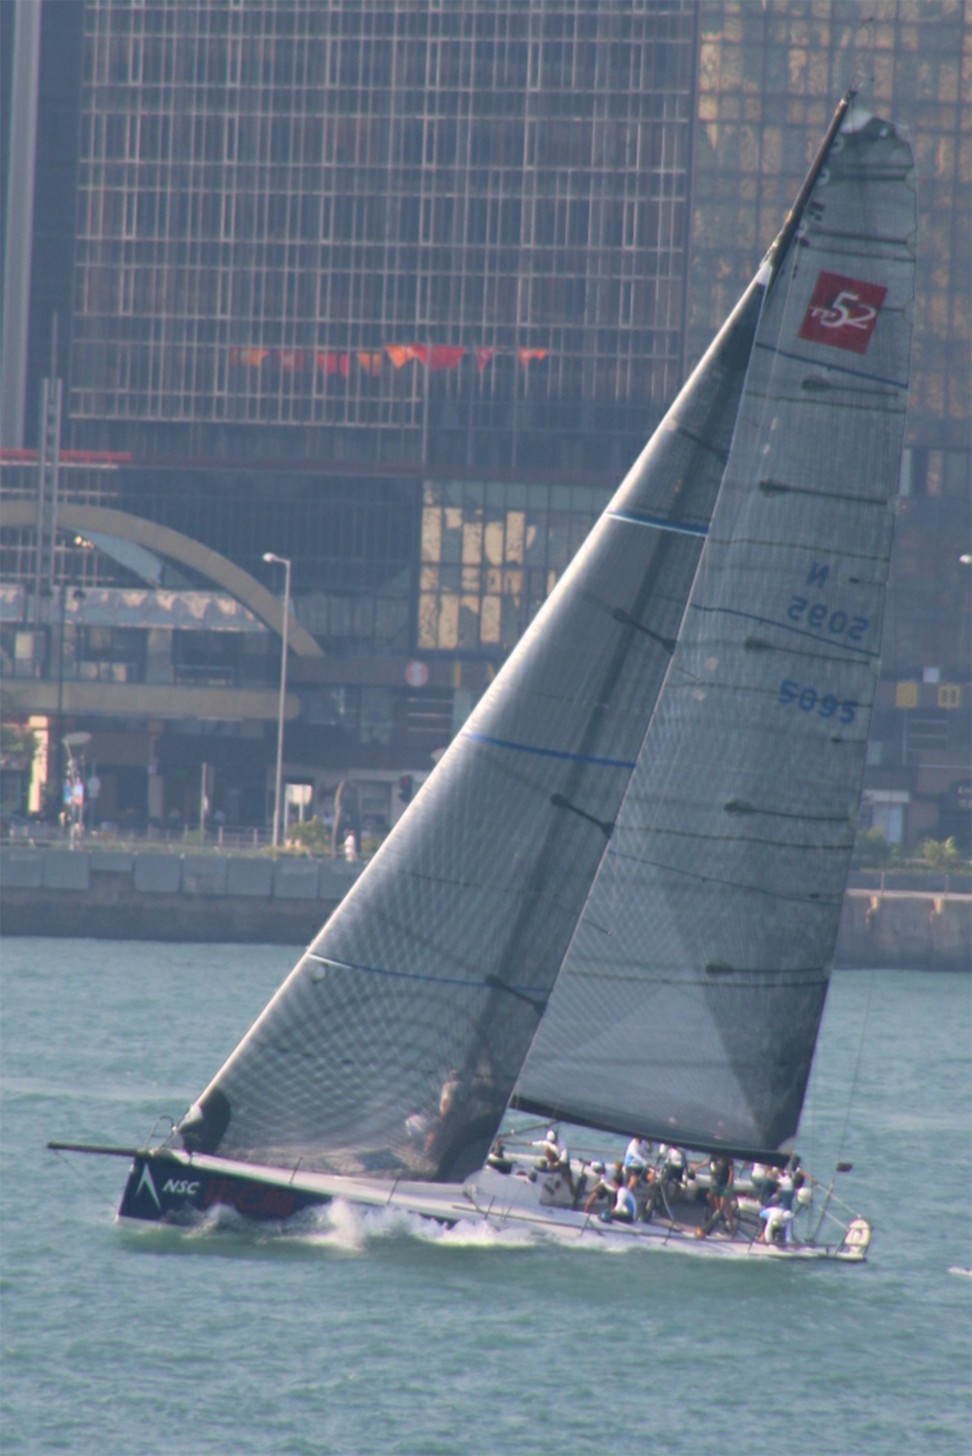 Ark323 sailing in Hong Kong’s Victoria Harbour in October 2015. Photo: Unus Alladin